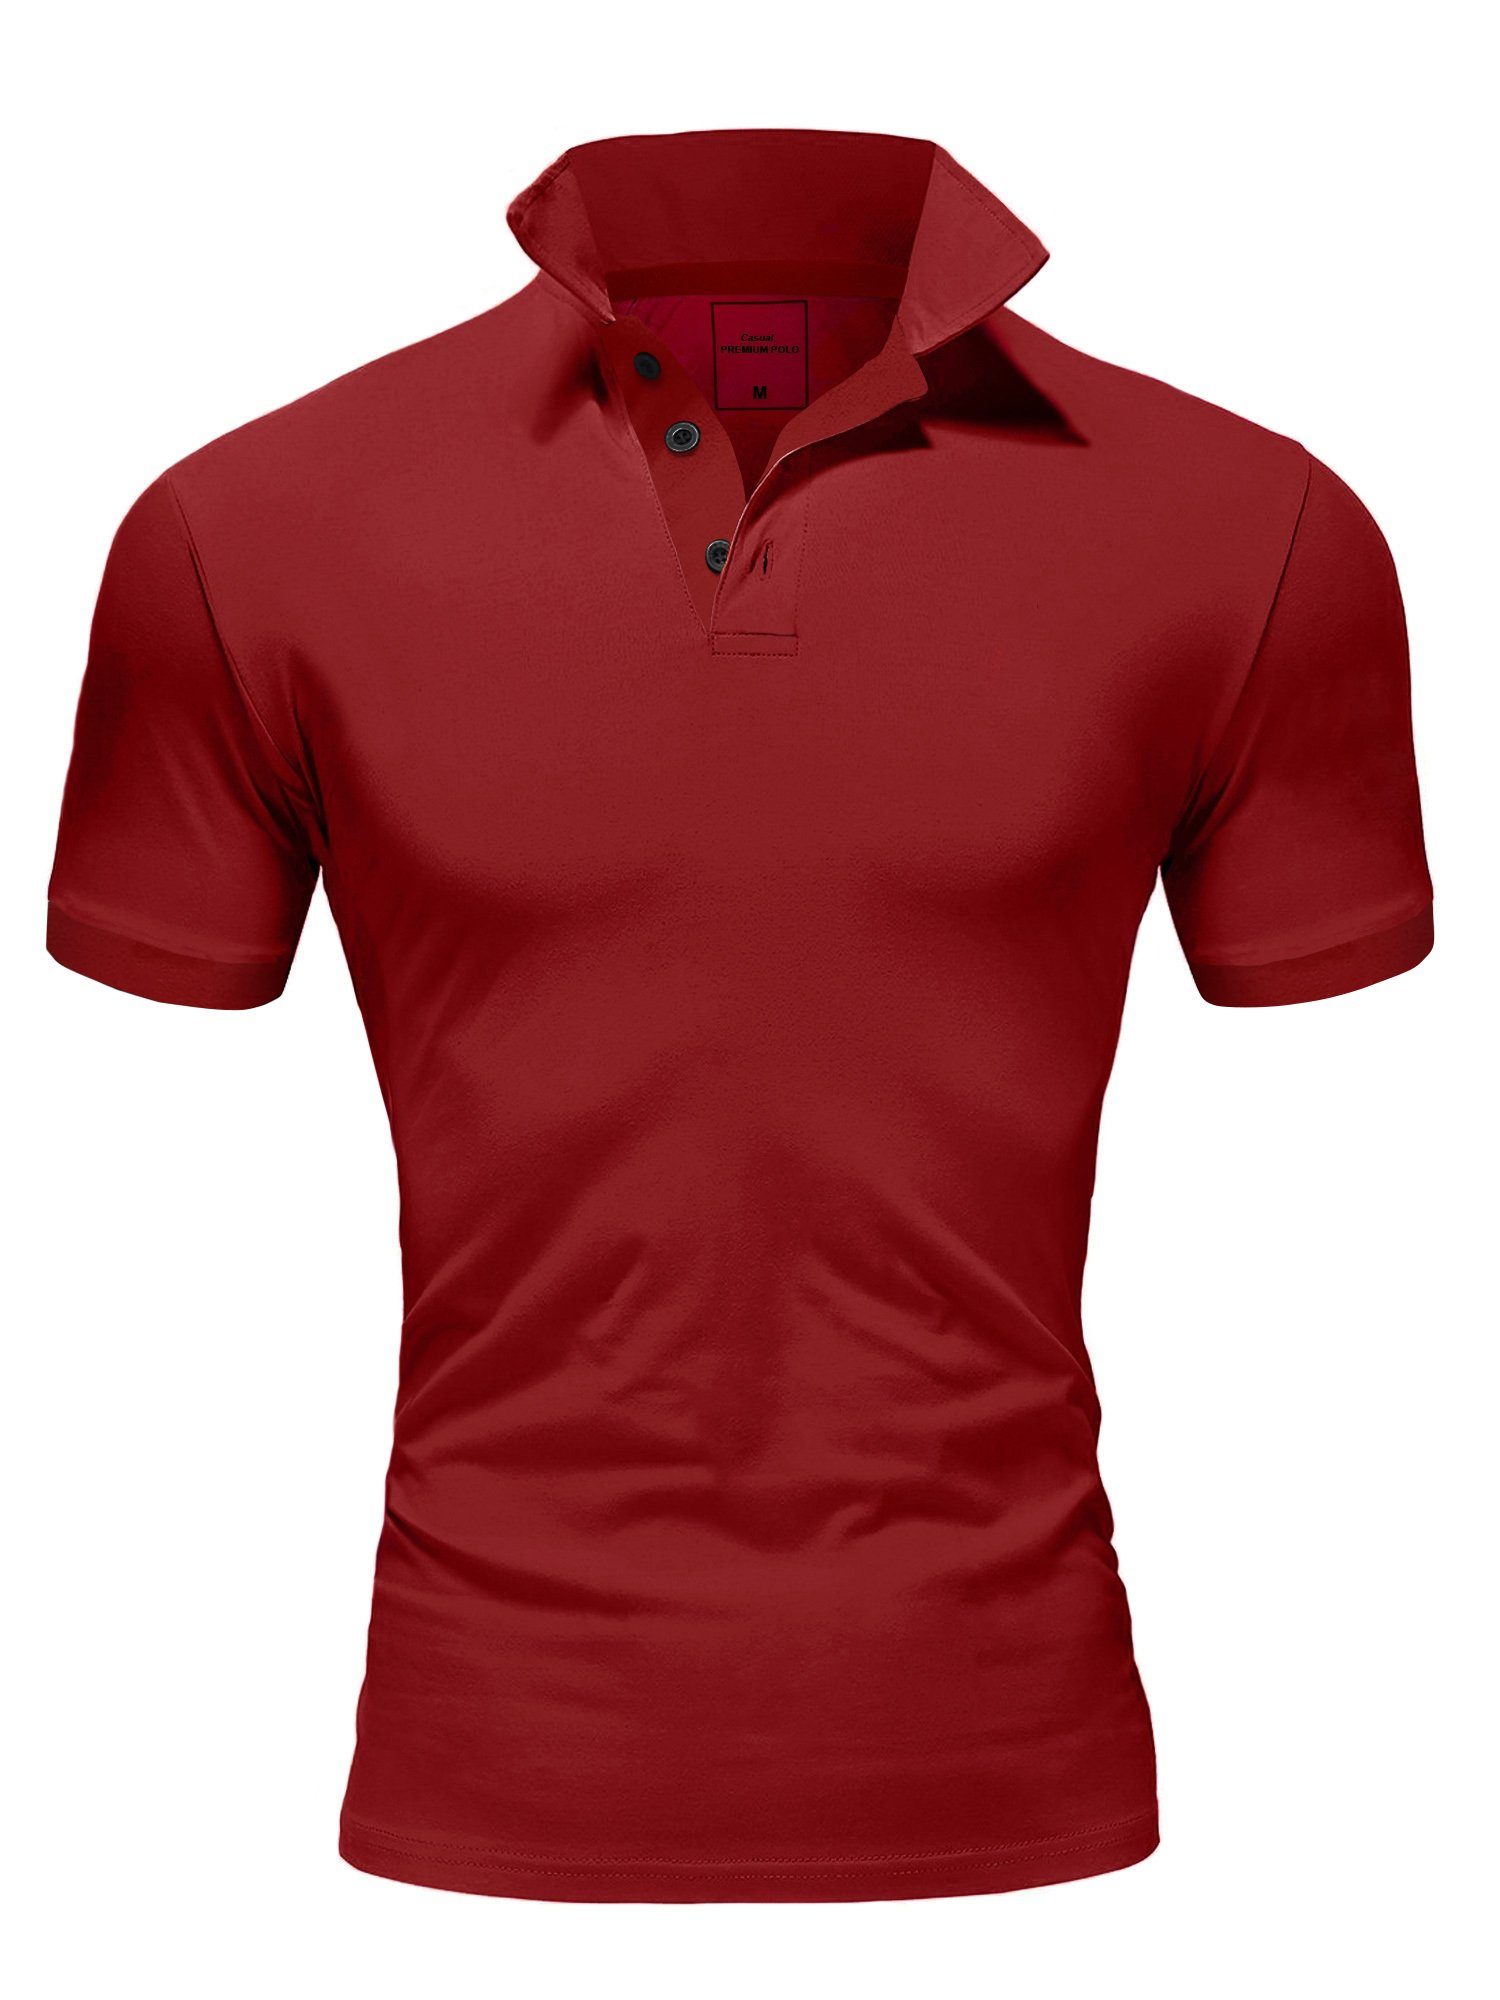 Basic MAINE Amaci&Sons Kurzarm Poloshirt Poloshirt Bordeaux